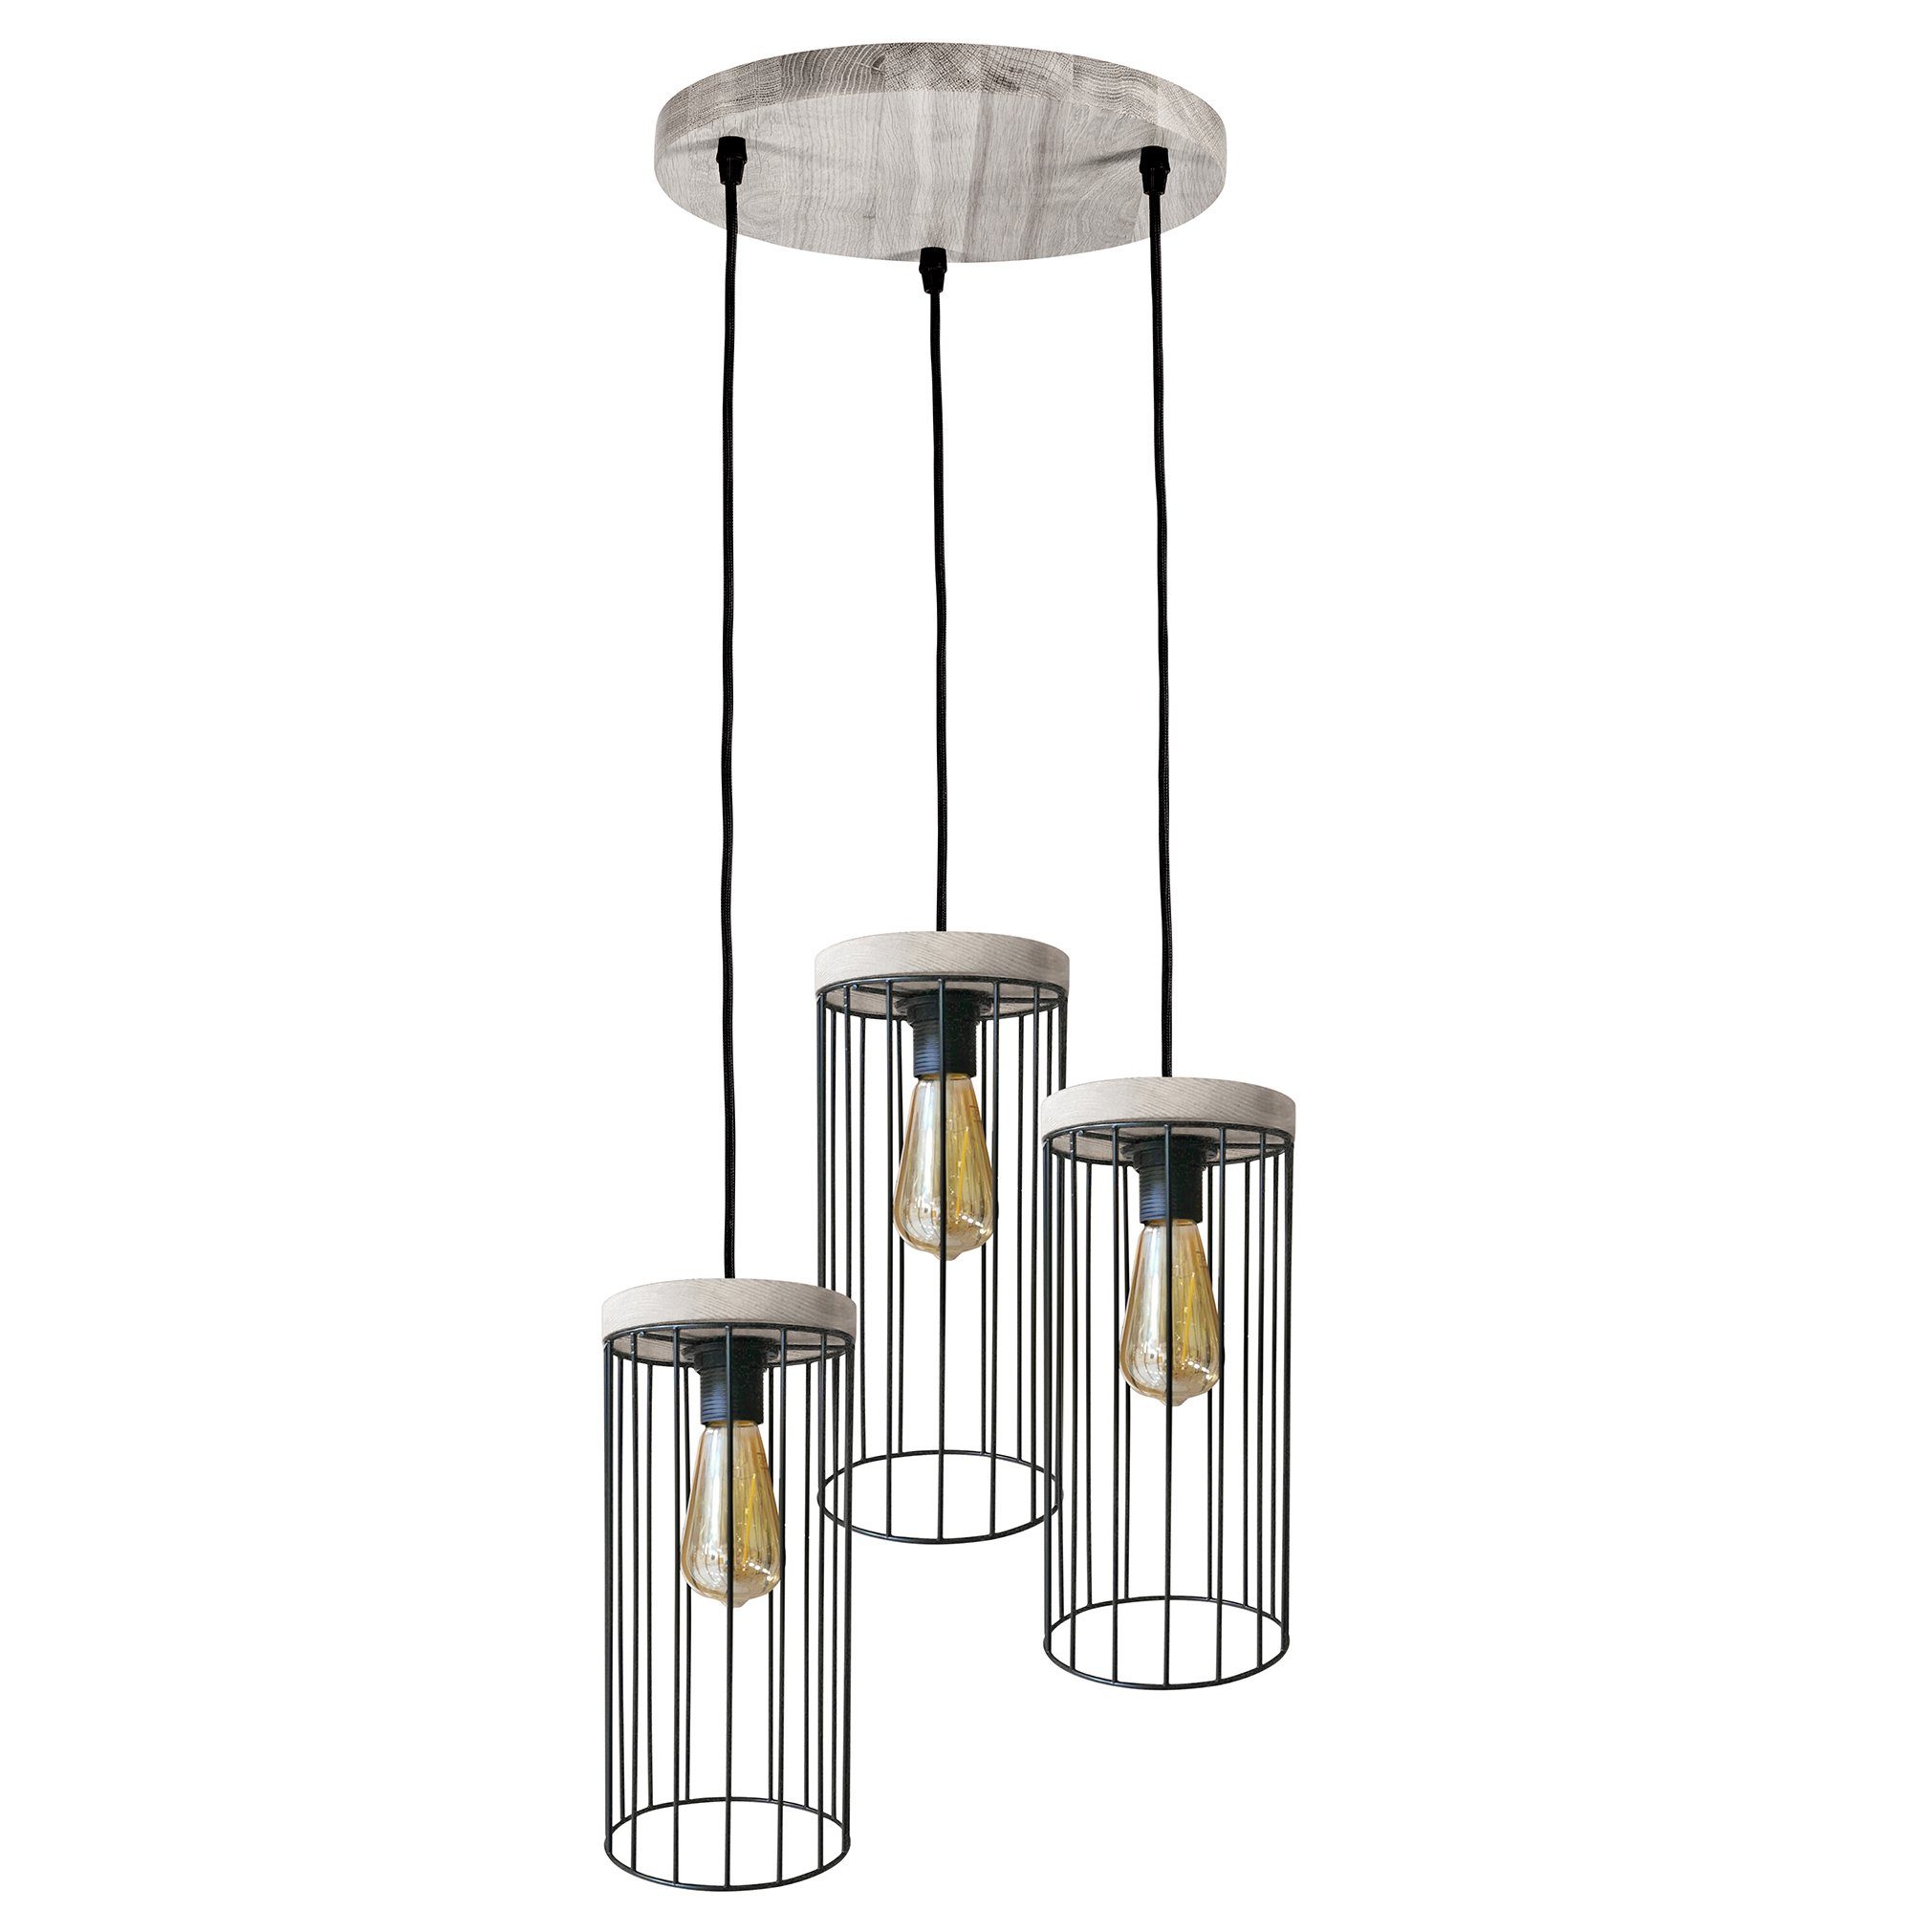 britop lighting hanglamp timeo wood max hanglamp, trendy kap van metaal, met grenenhout in grijs zwart